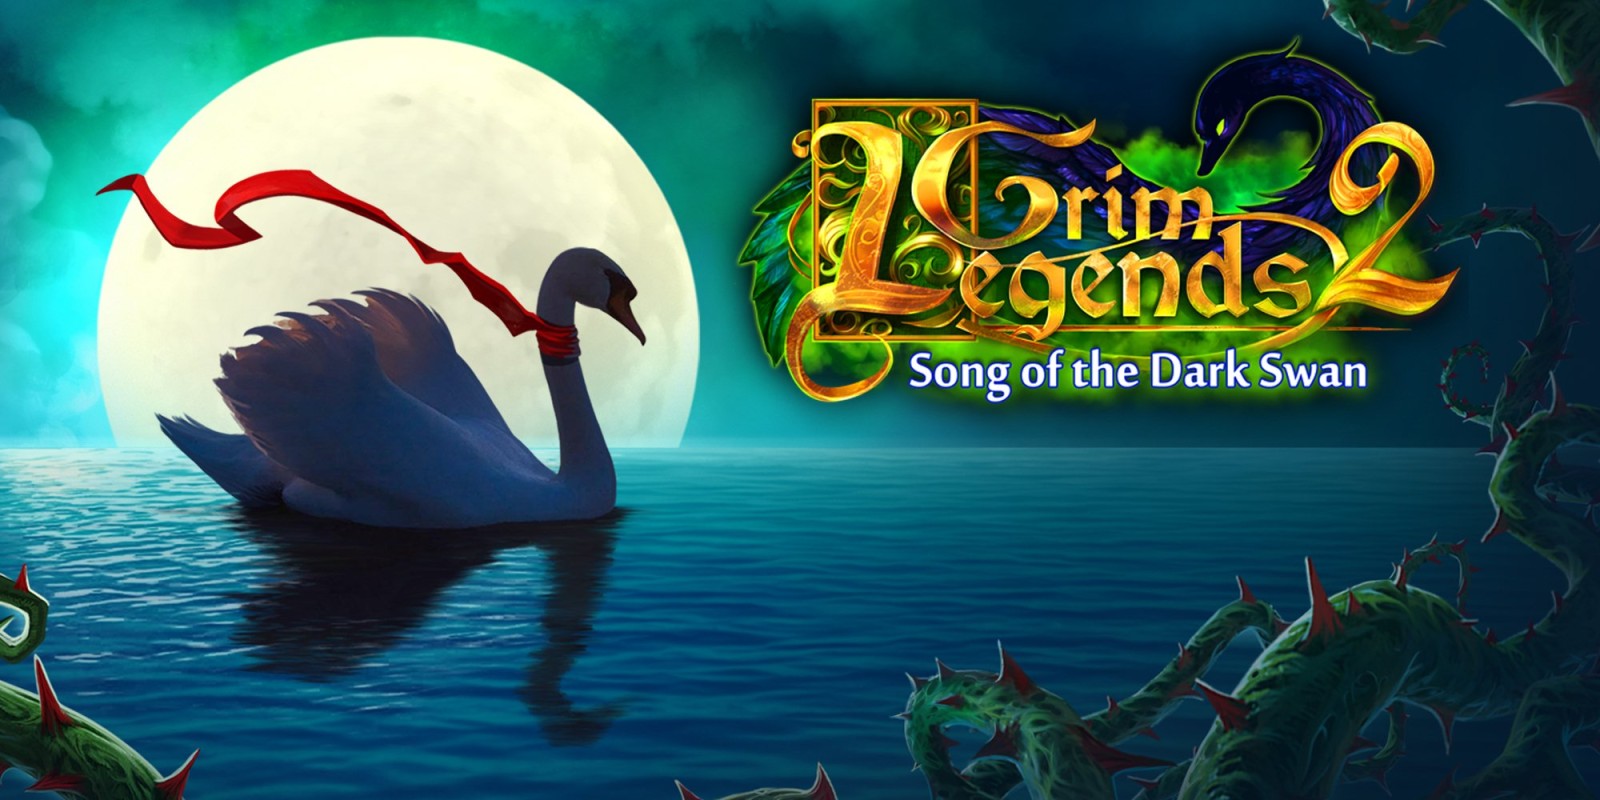 grim-legends-2-song-of-the-dark-swan-jeux-t-l-charger-sur-nintendo-switch-jeux-nintendo